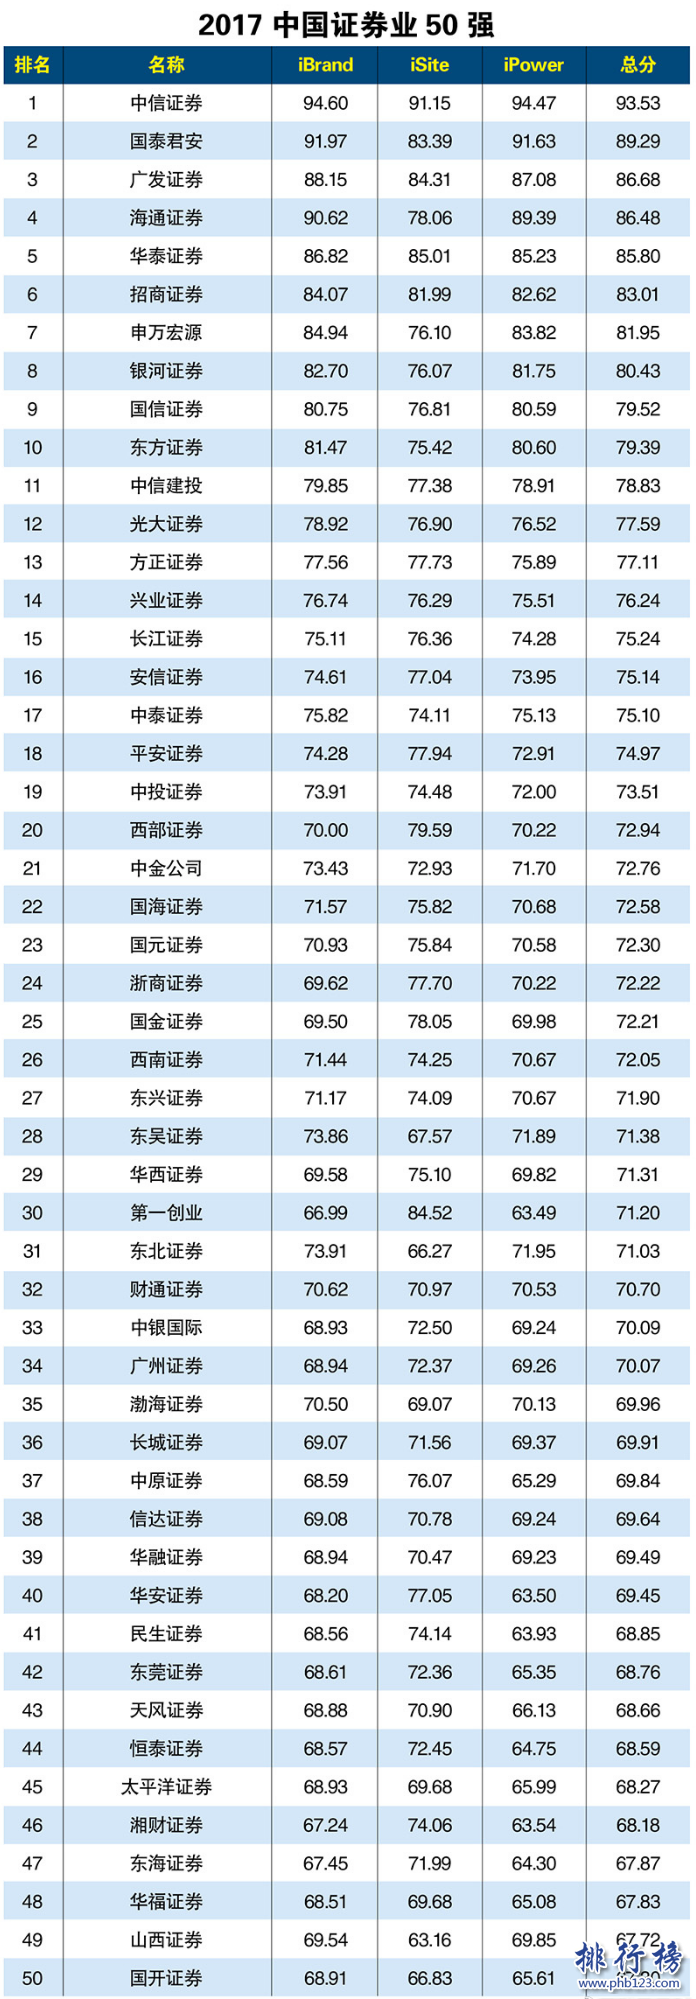 2017年中國證券業50強排行榜：中信登頂,國泰第2廣發第3